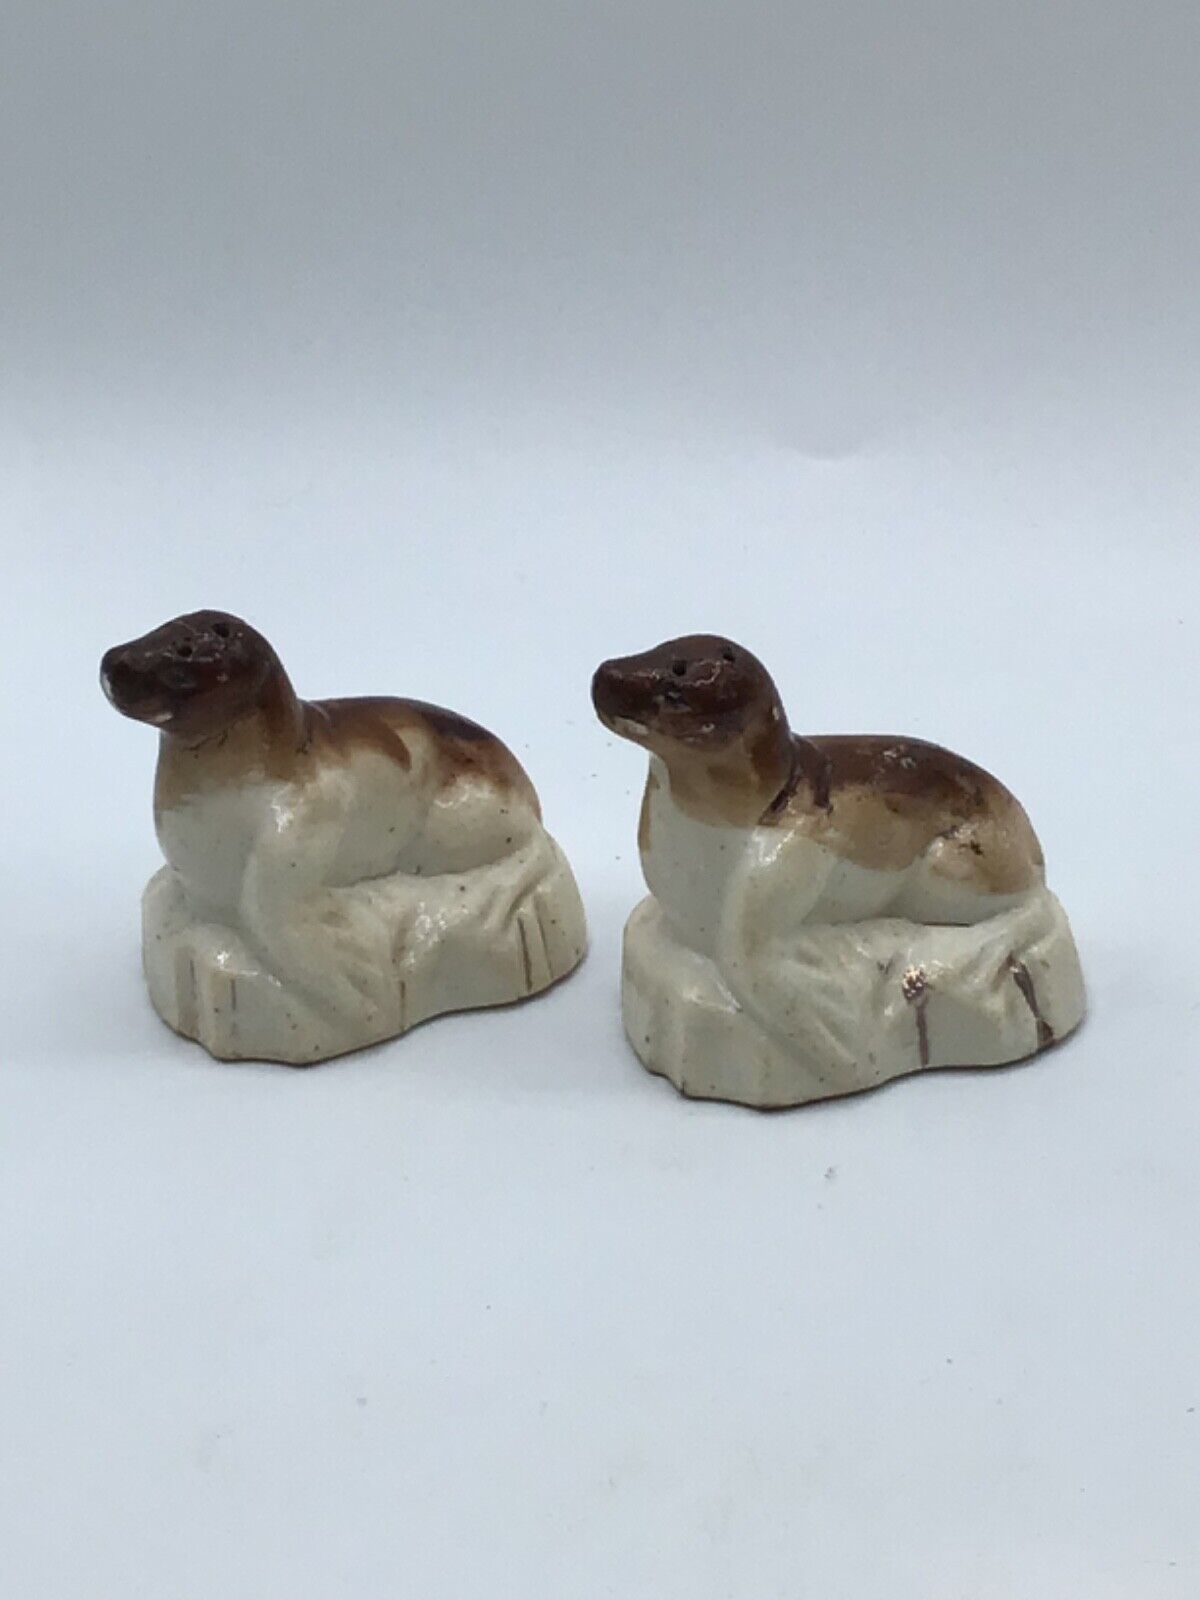 Vintage Ceramic Seals Salt and Pepper Shaker Set made in Occupied Japan